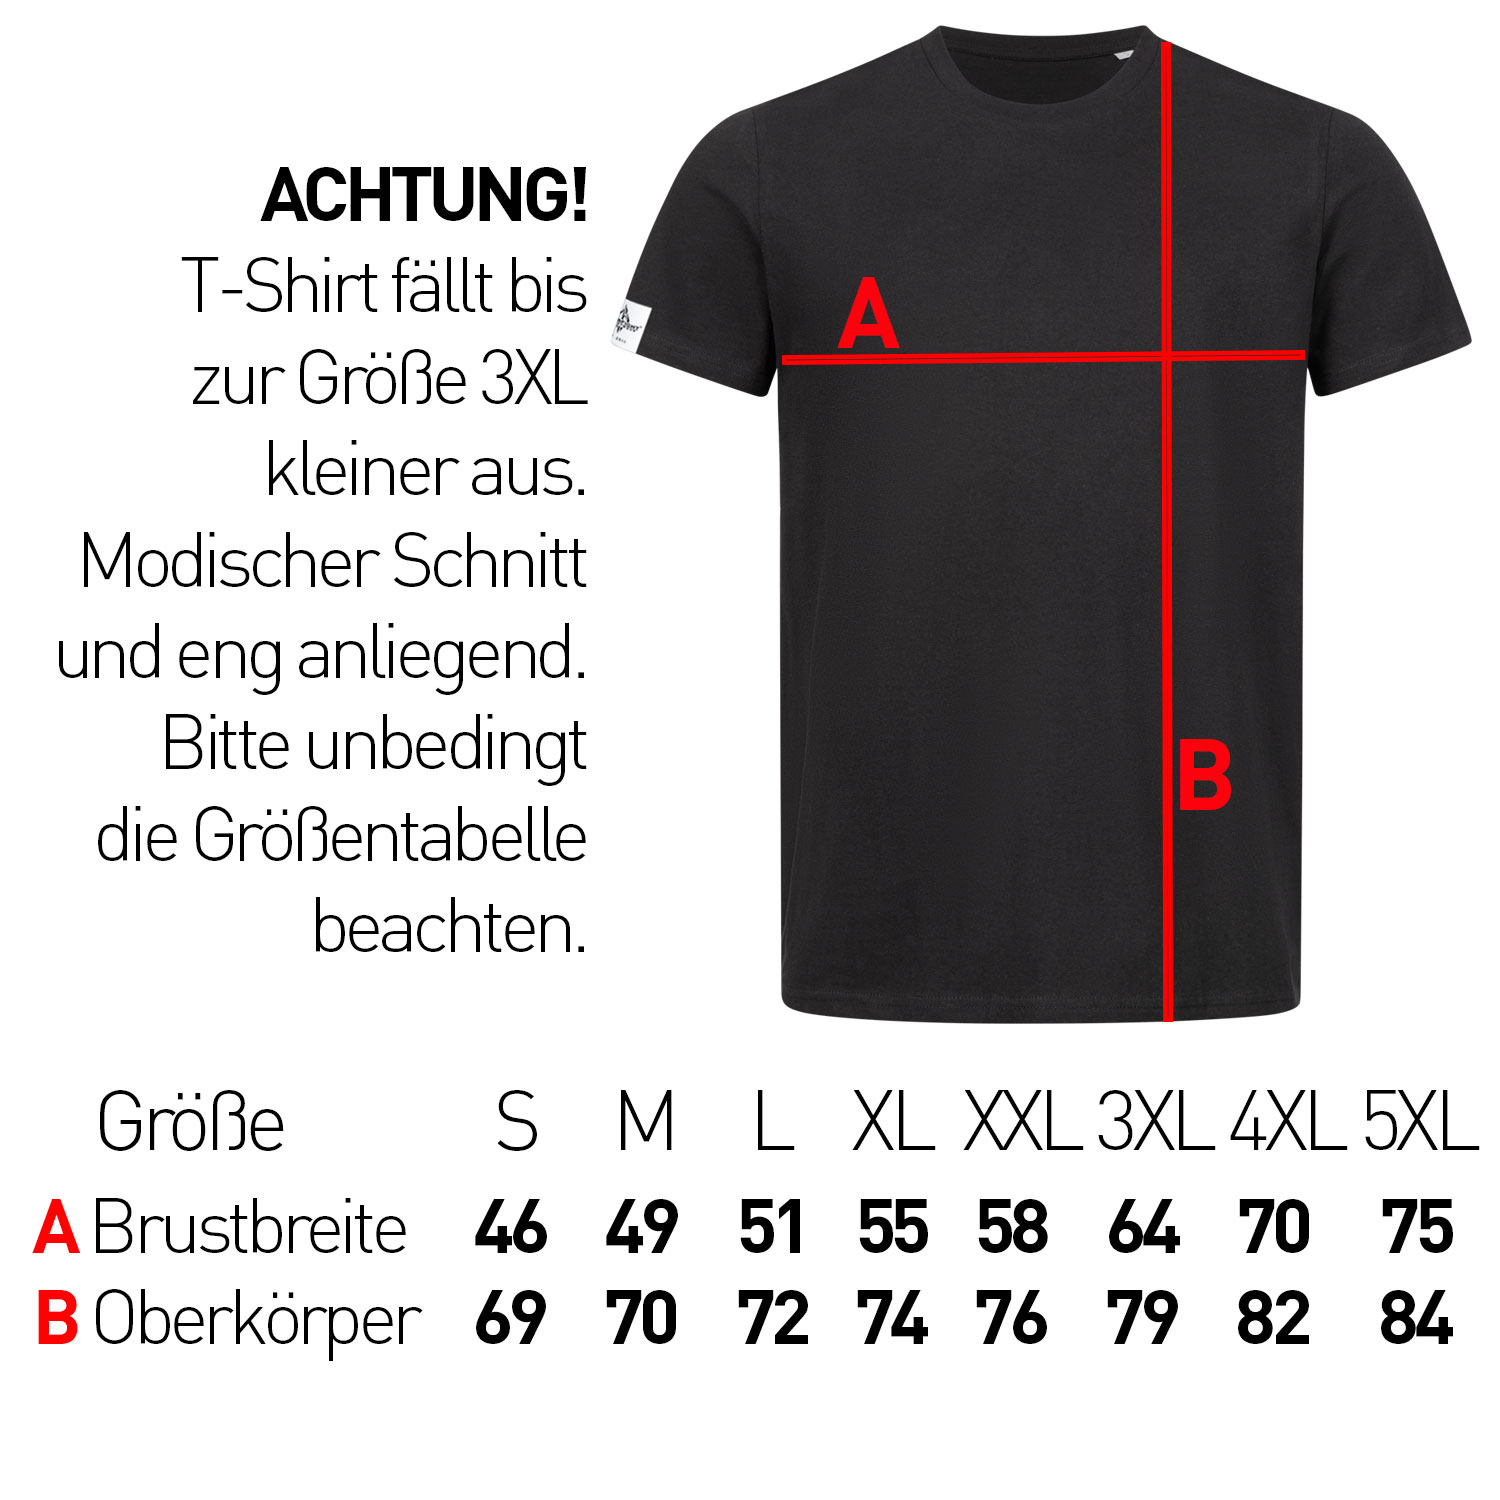 Das Angriffslustig® Design - Männer T-Shirt